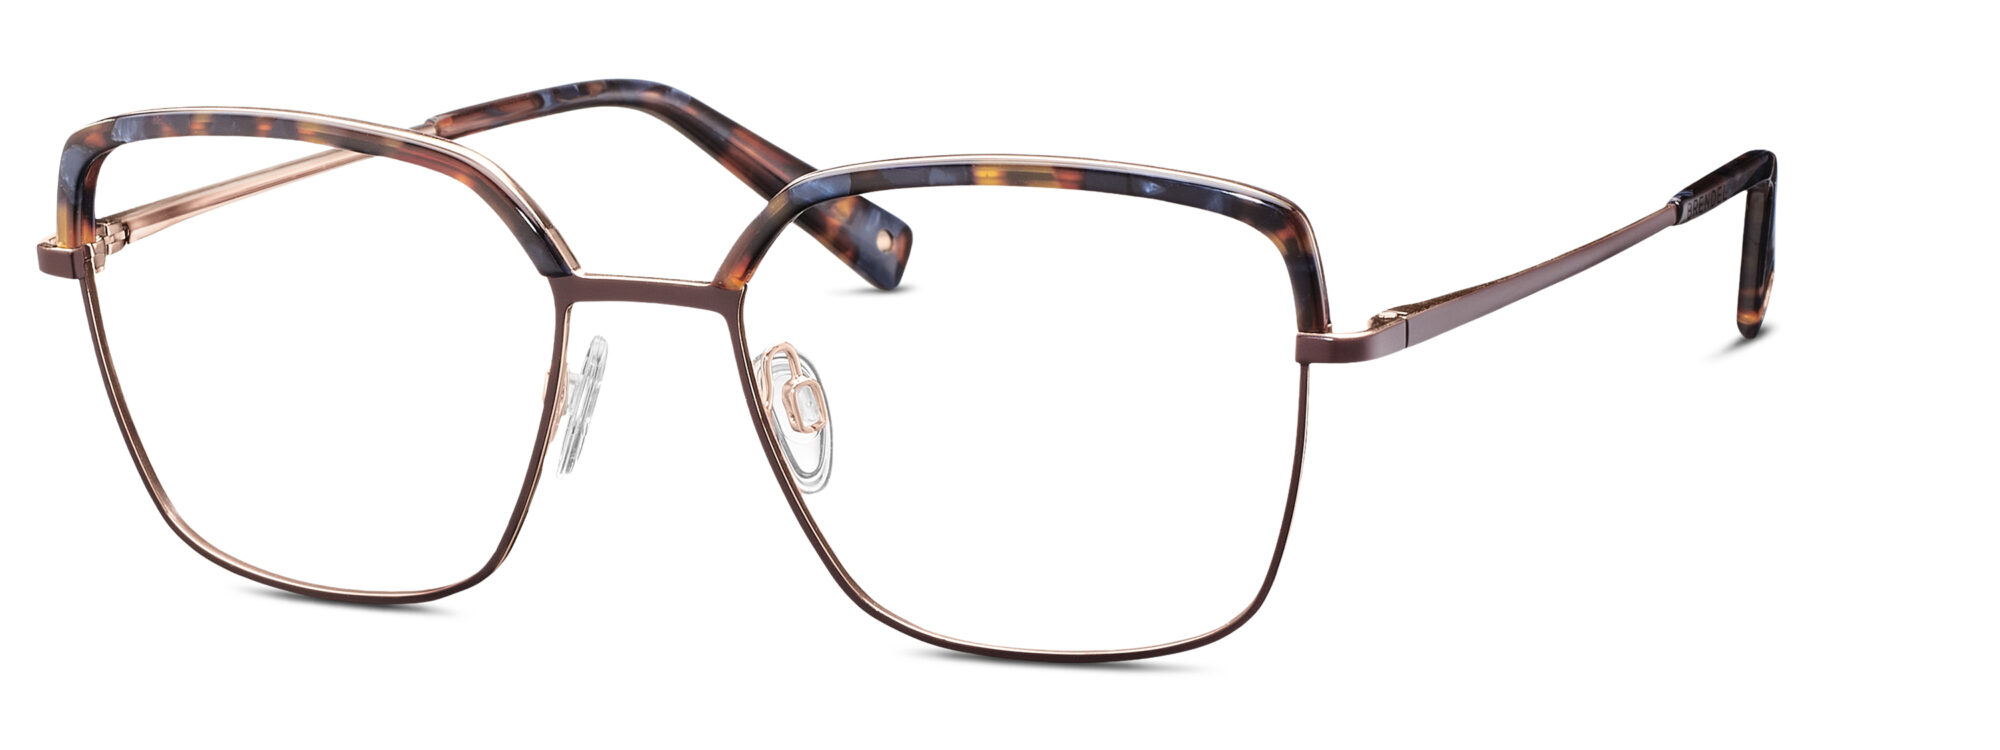 BRENDEL eyewear - 902409-60